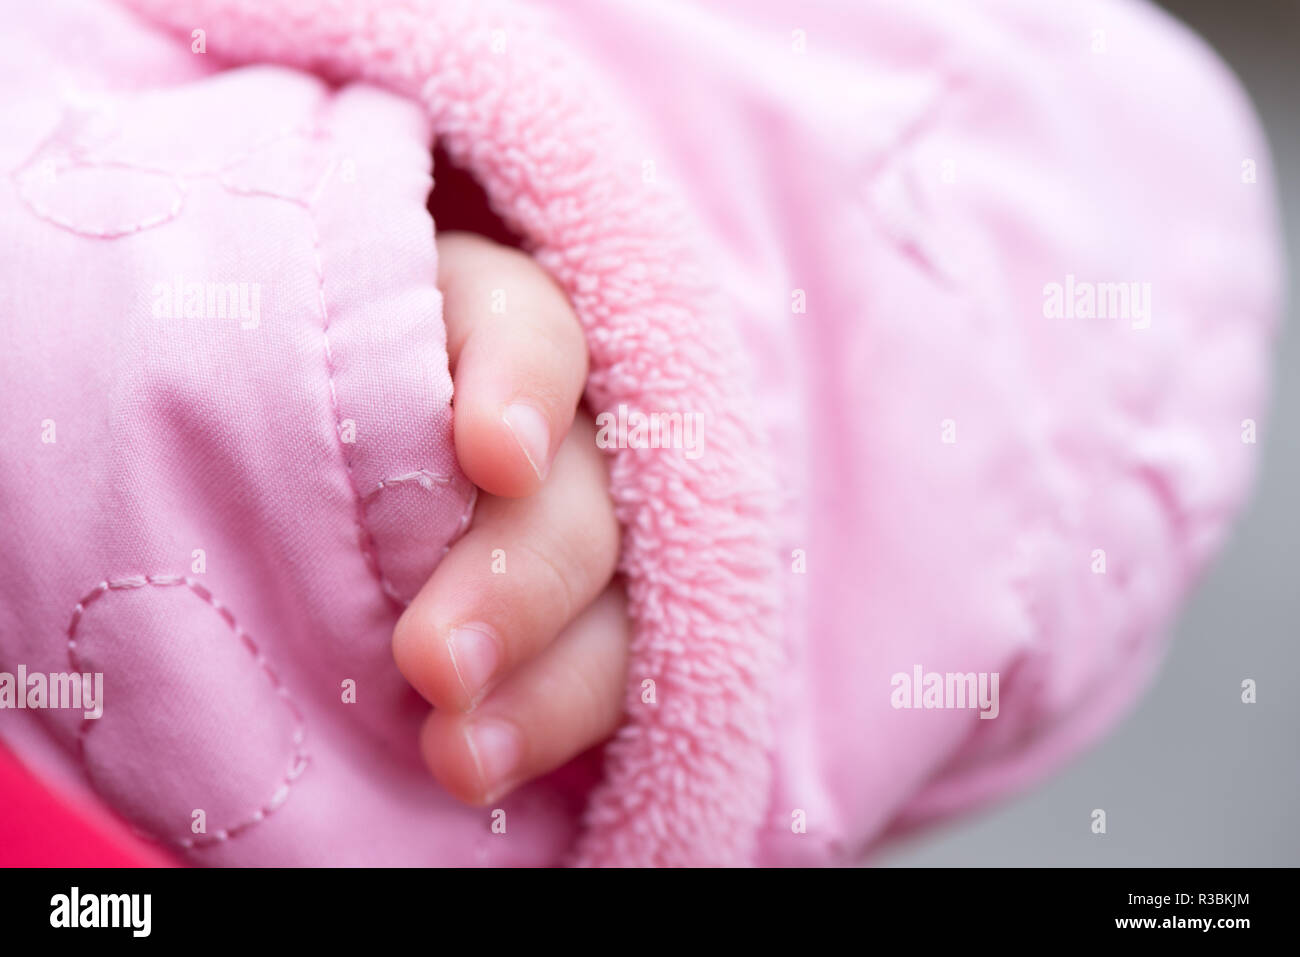 Baby hand Stock Photo